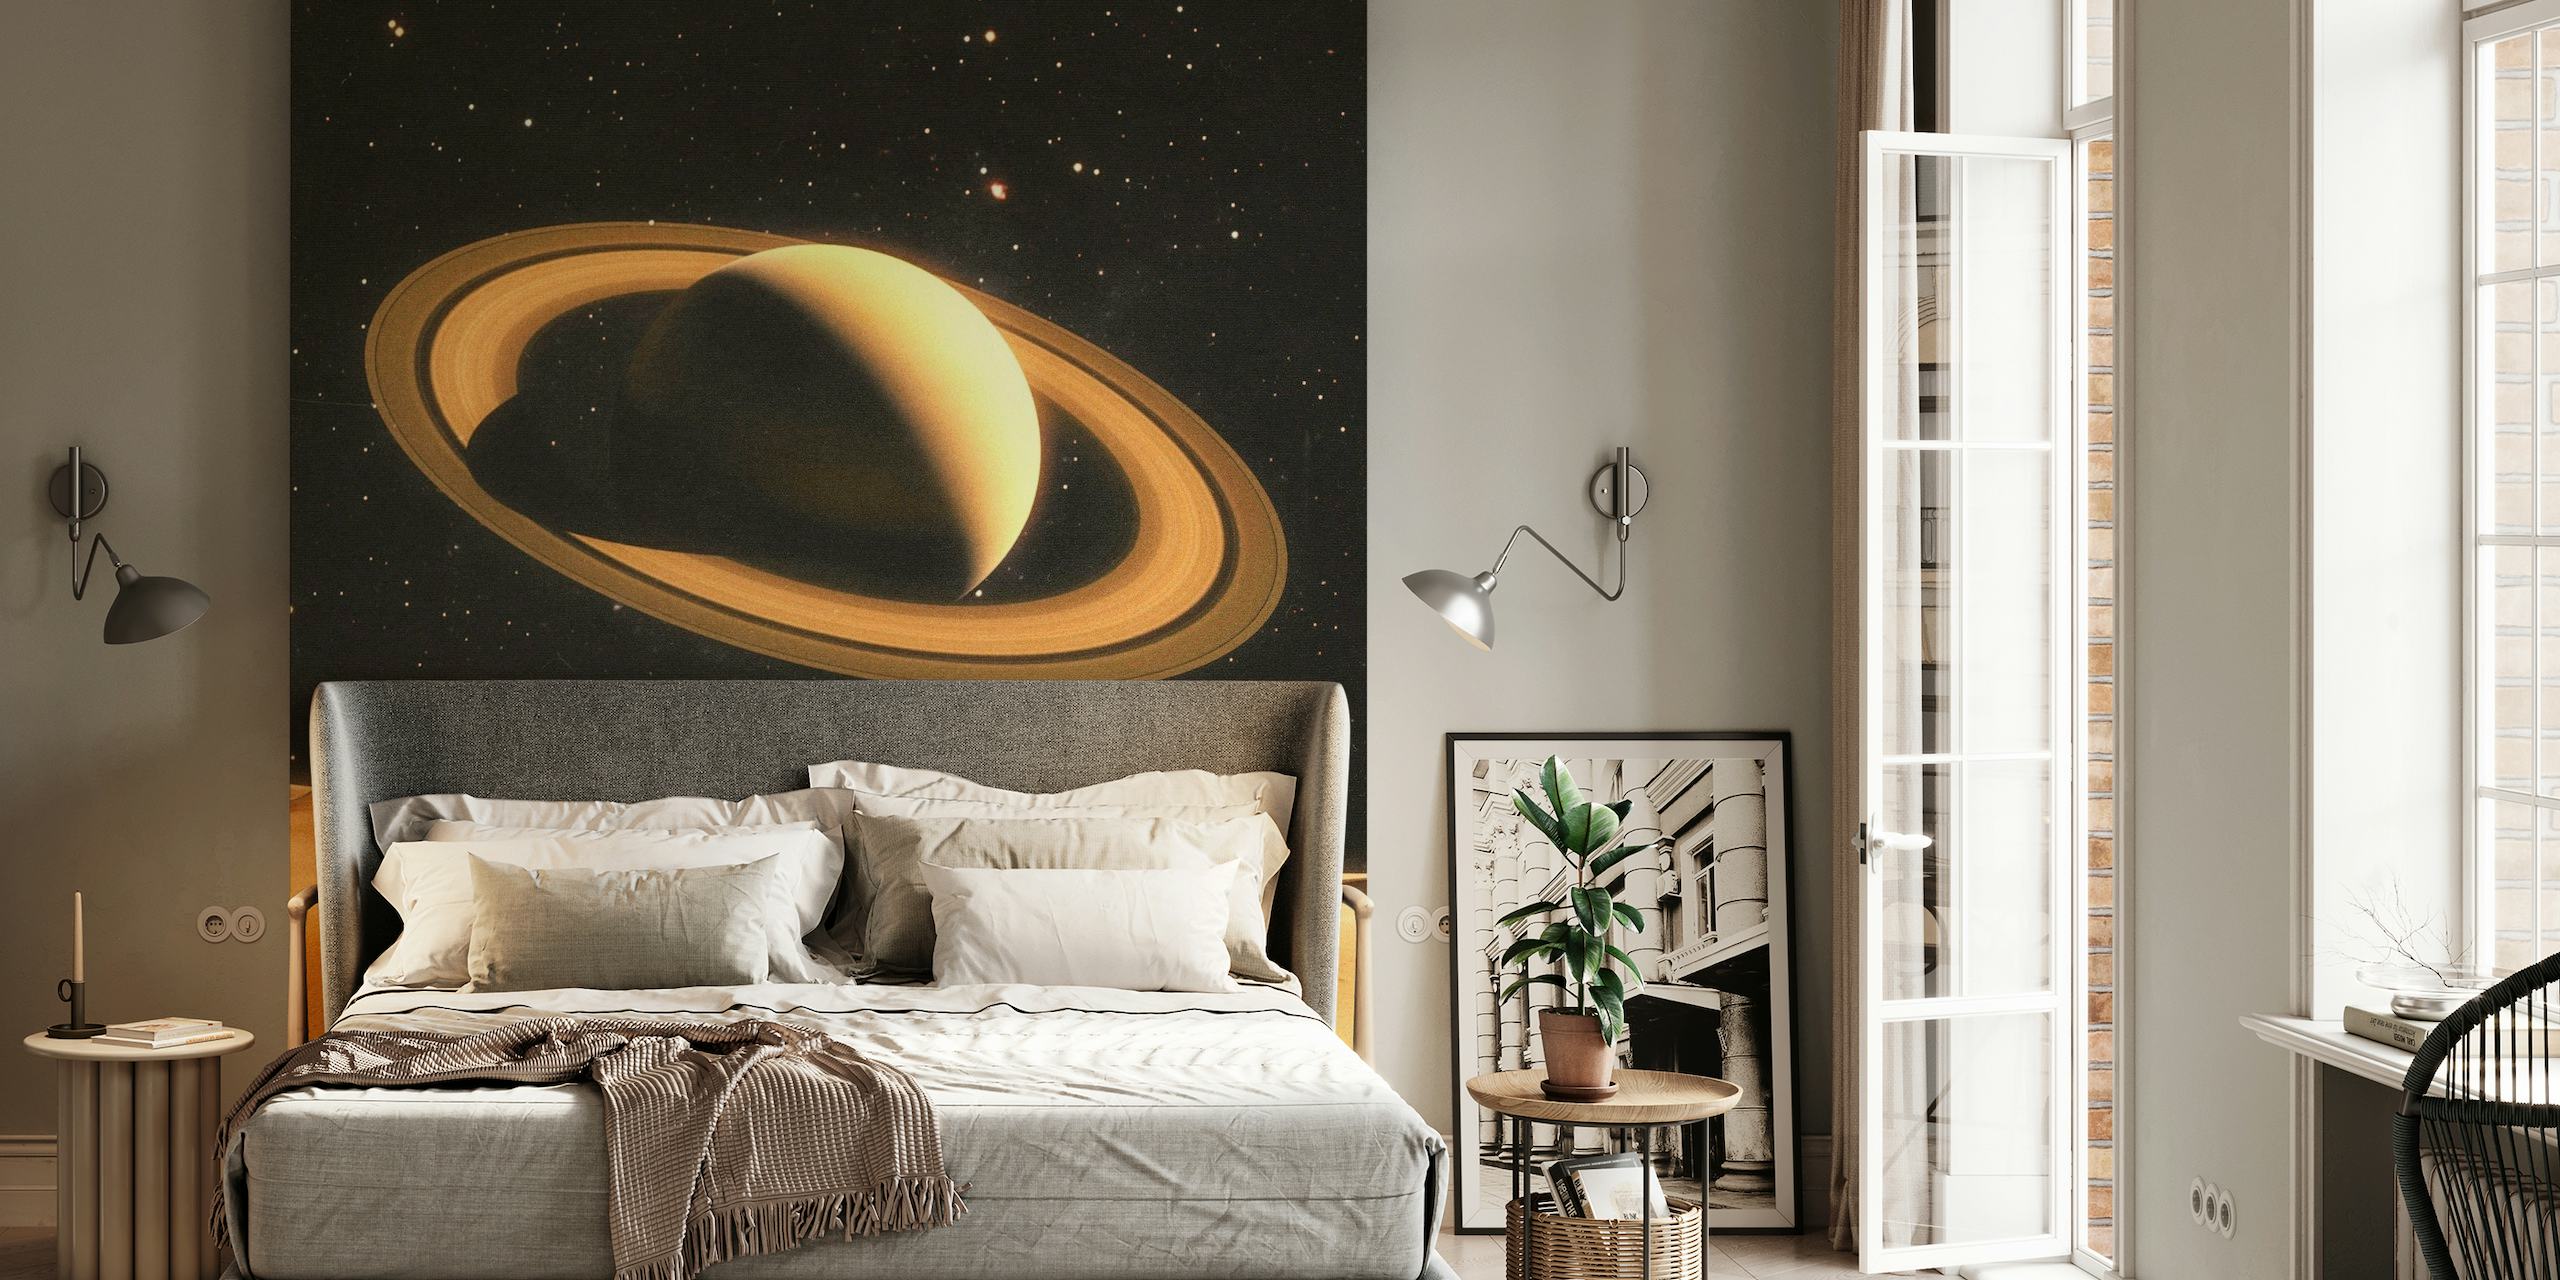 Fototapeta przedstawiająca dwoje ludzi na pustynnej planecie z Saturnem w tle